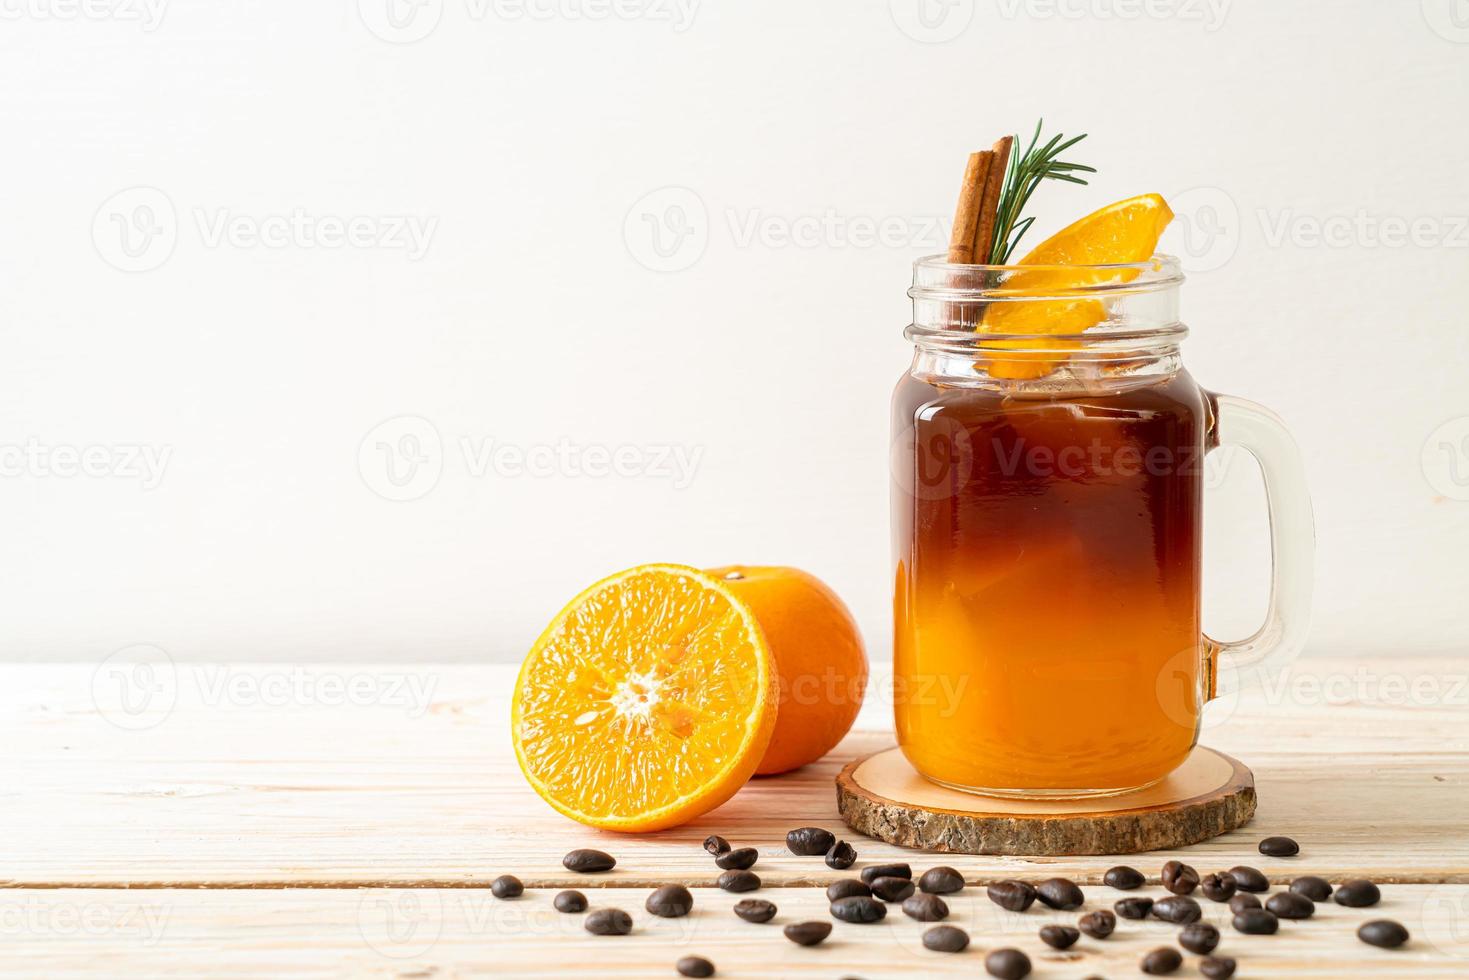 un verre de café noir americano glacé et une couche de jus d'orange et de citron décoré de romarin et de cannelle sur fond de bois photo